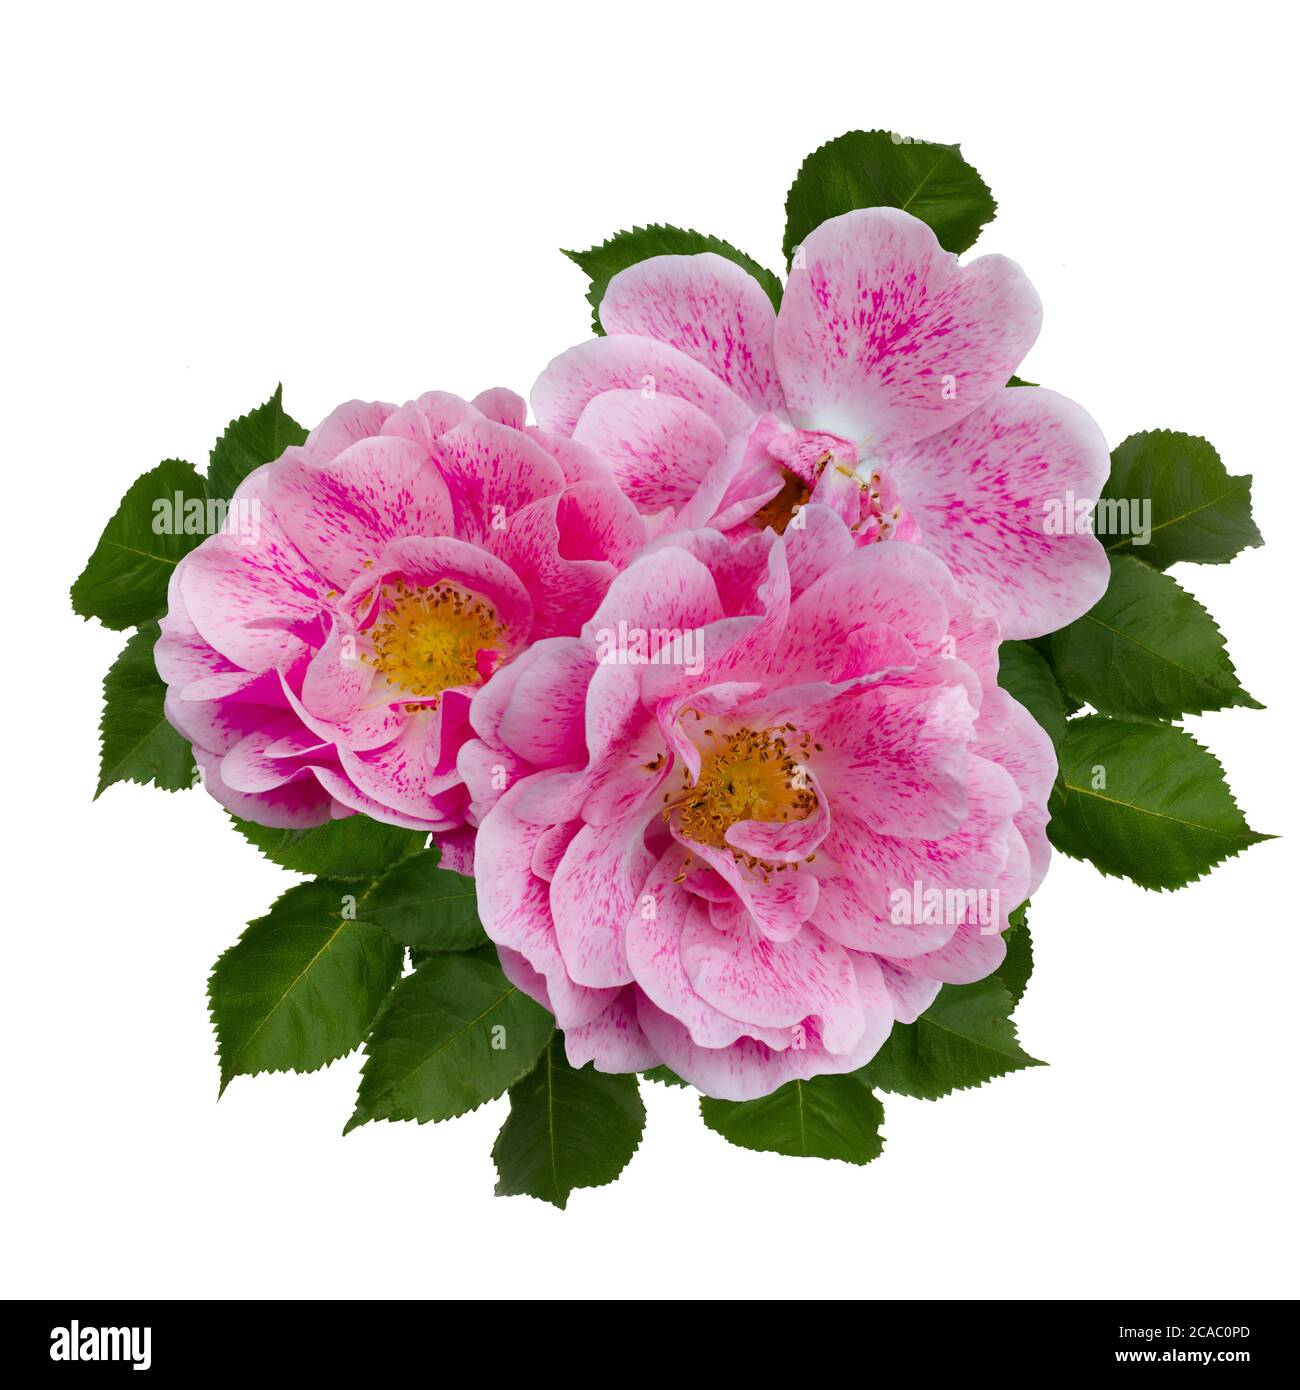 Delicate rose rosa con foglie verdi Foto Stock